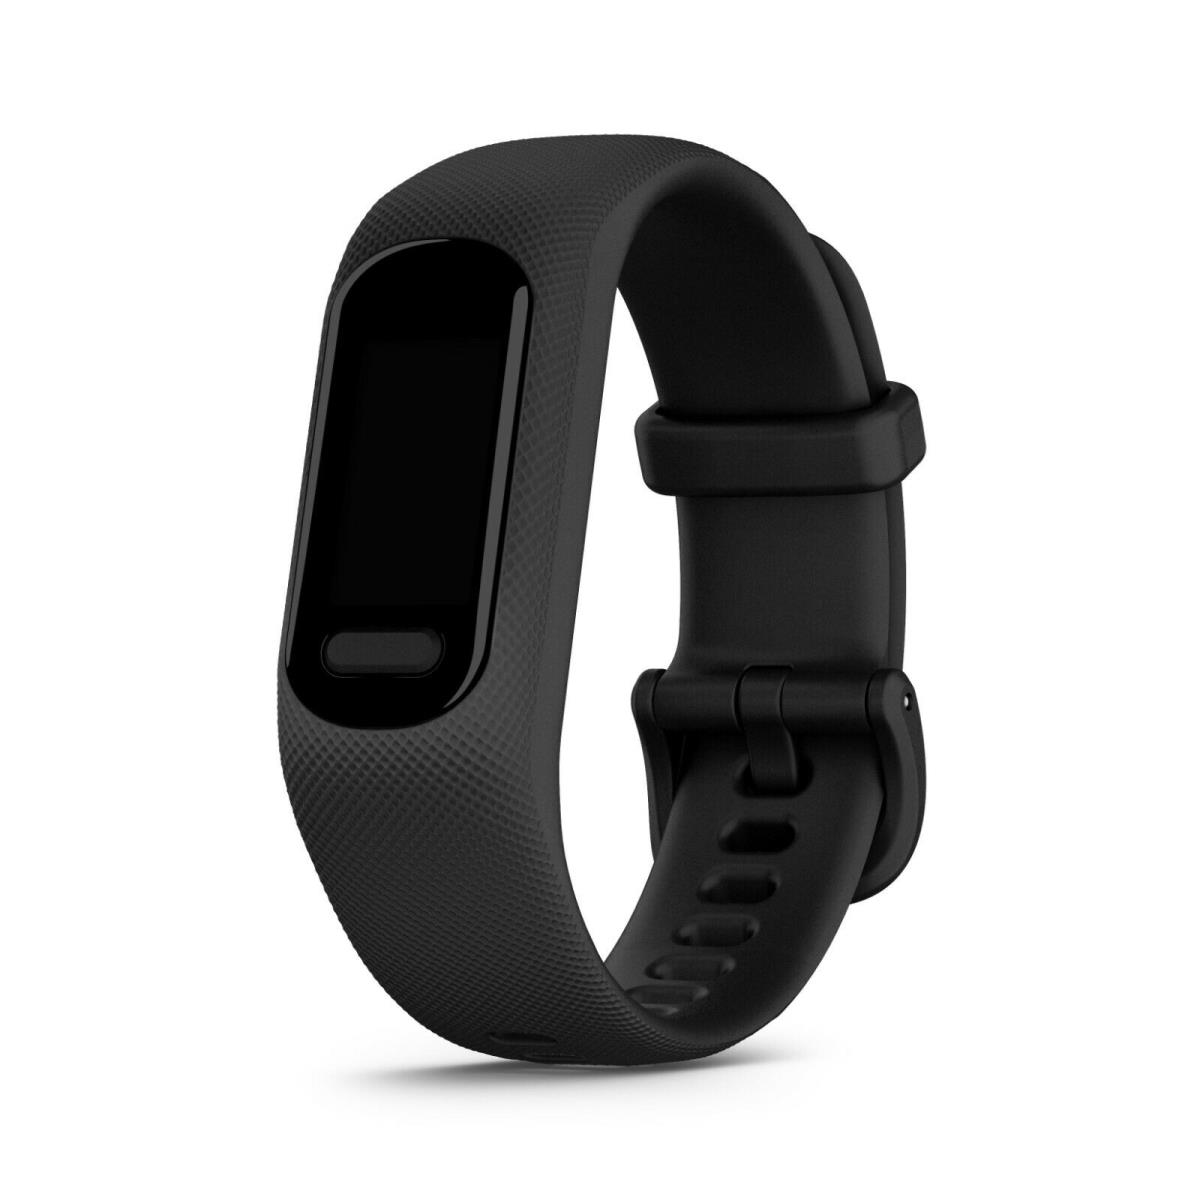 Garmin Vivosmart 5 Smart Fitness and Health Activity Tracker Black L